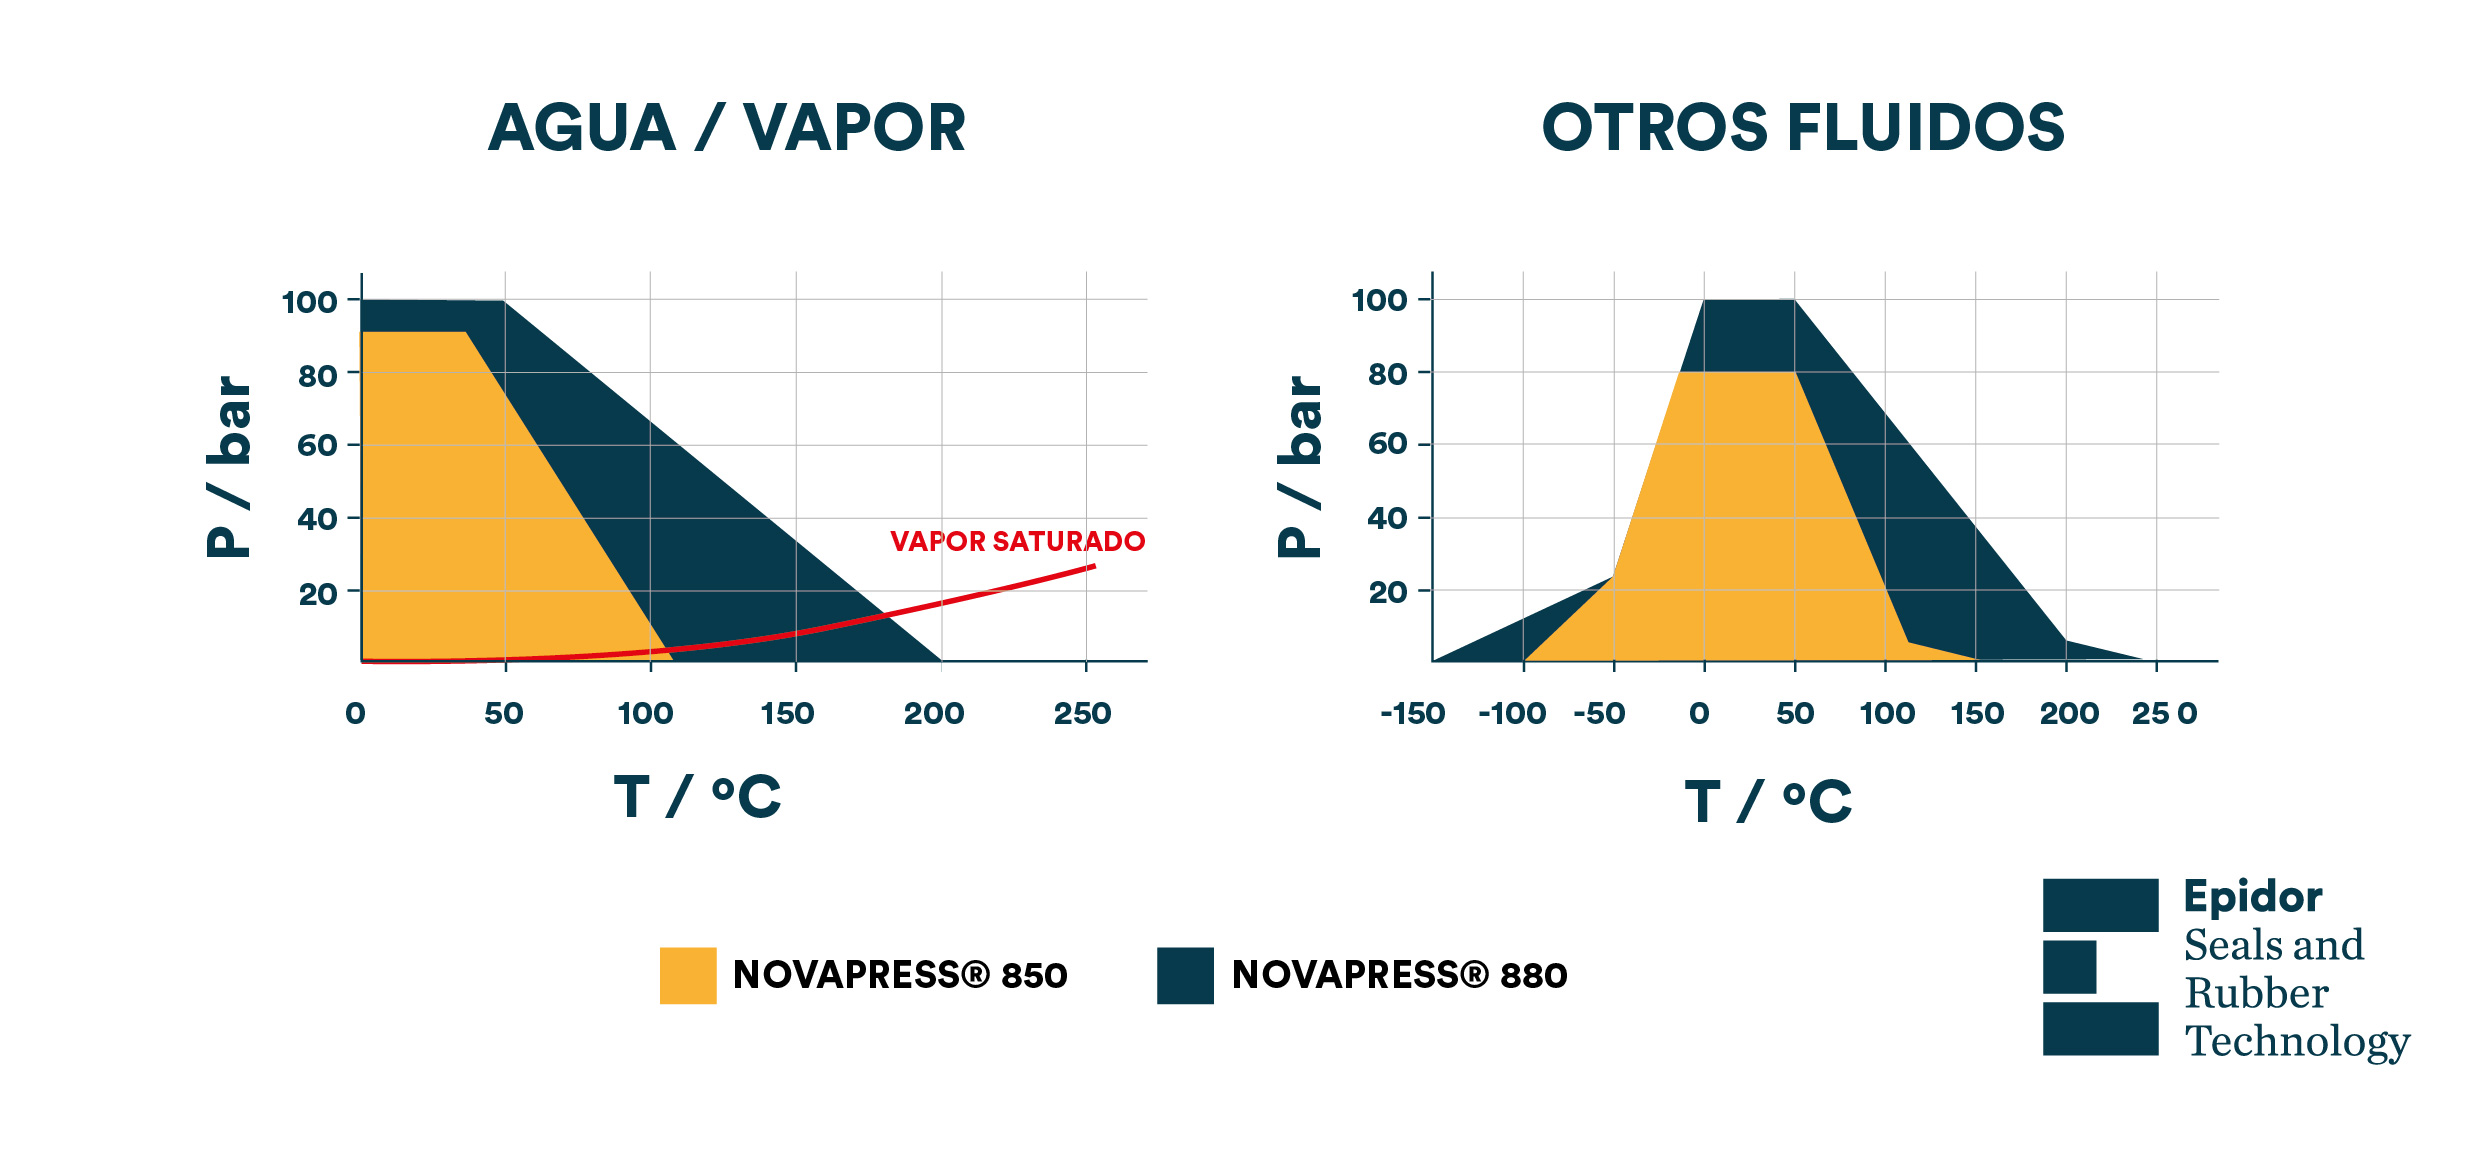 Comparación entre Novapress 880 y Novapress 850